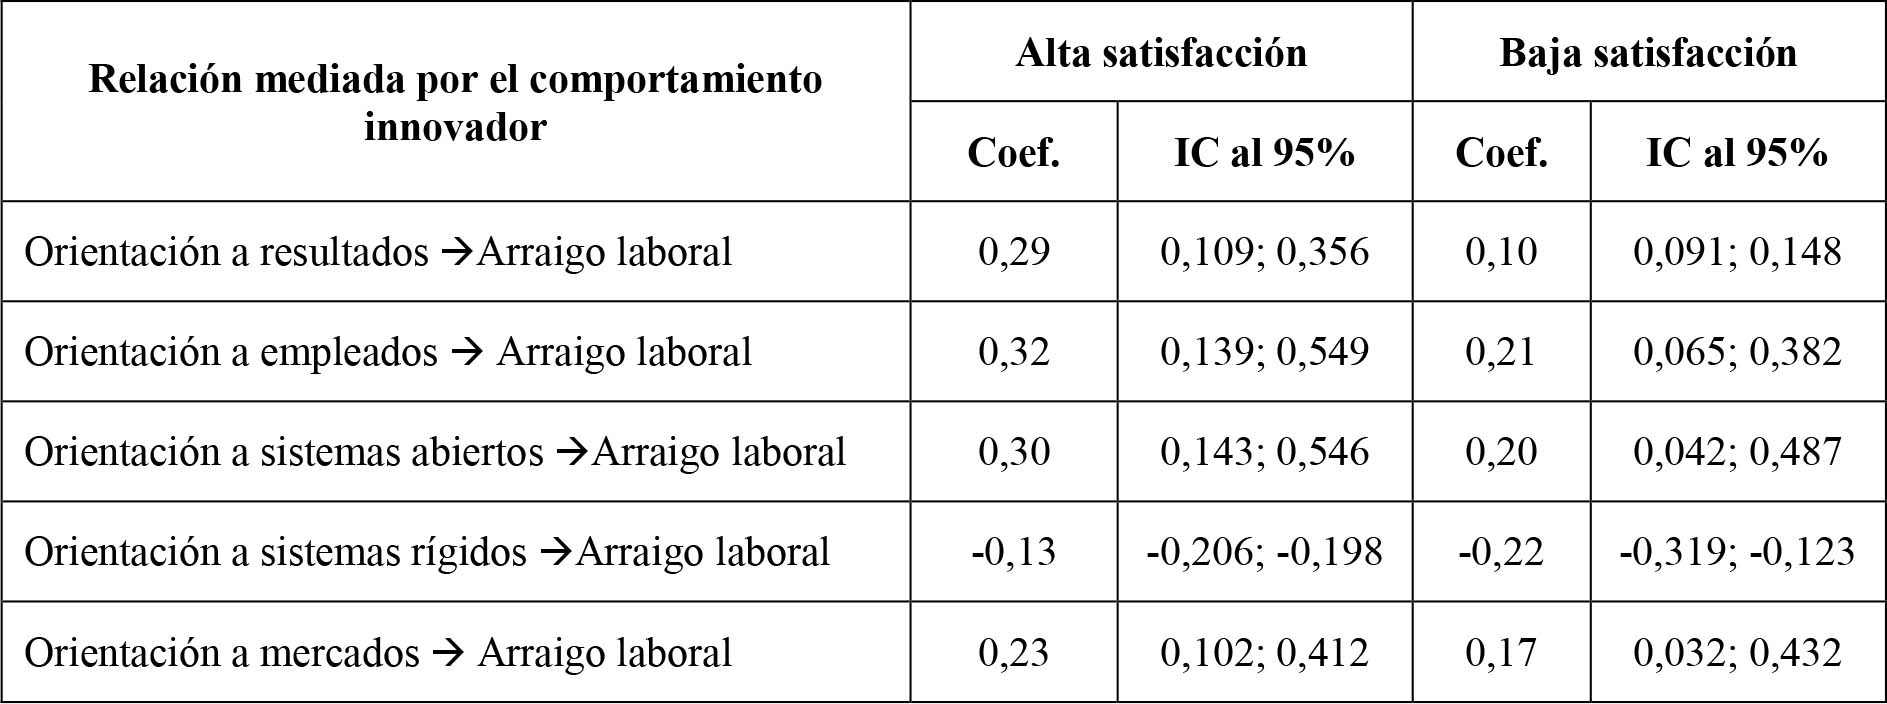 Efectos indirectos condicionales en función de valores altos y bajos de satisfacción laboral